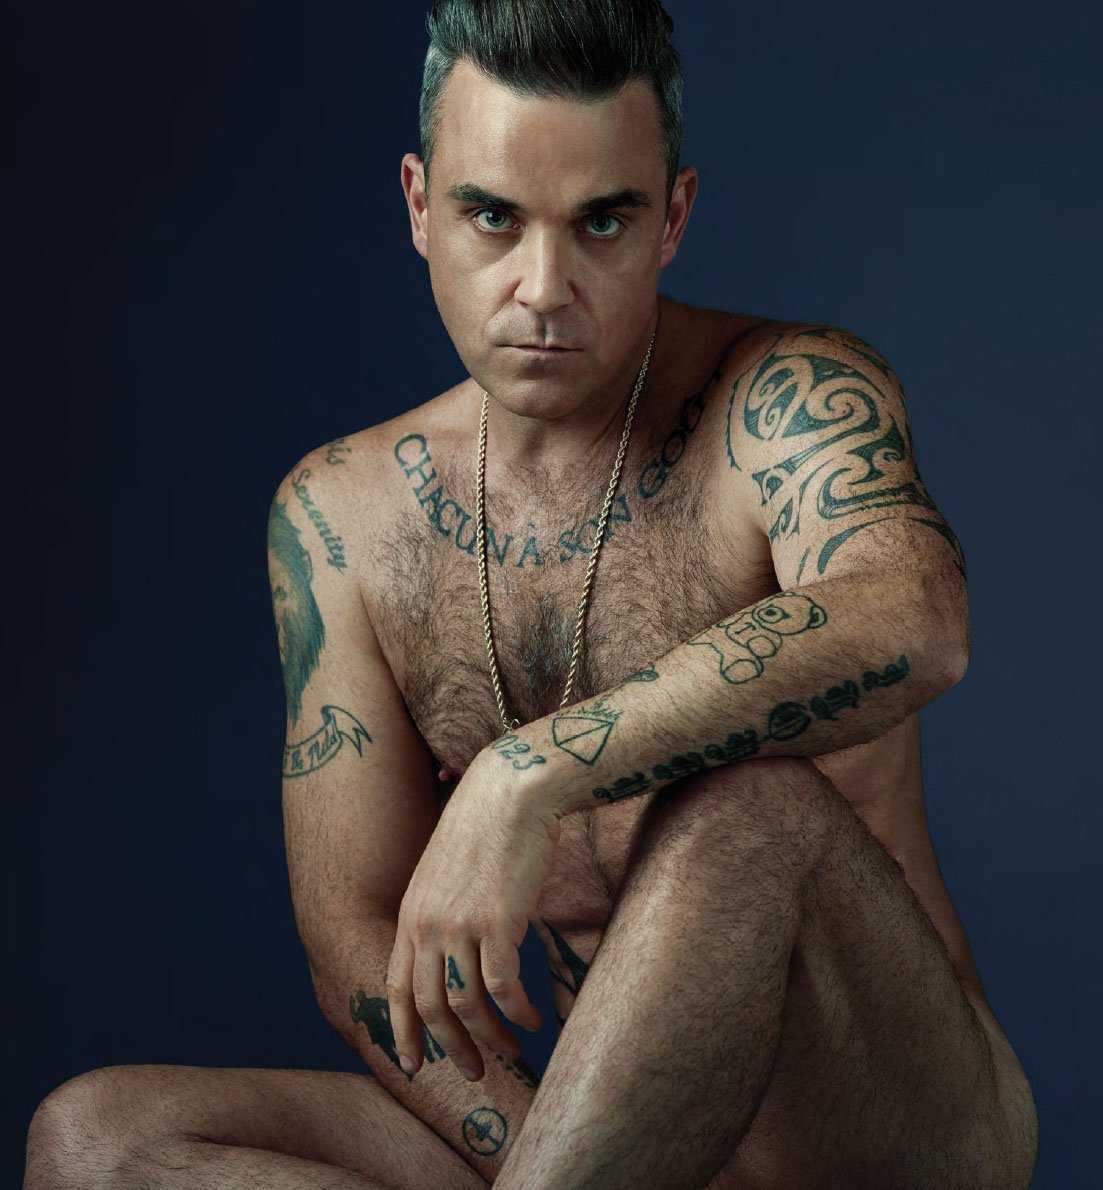 Emisoras Unidas Robbie Williams Llega A Sus A Os De Edad M S Apuesto Que Nunca